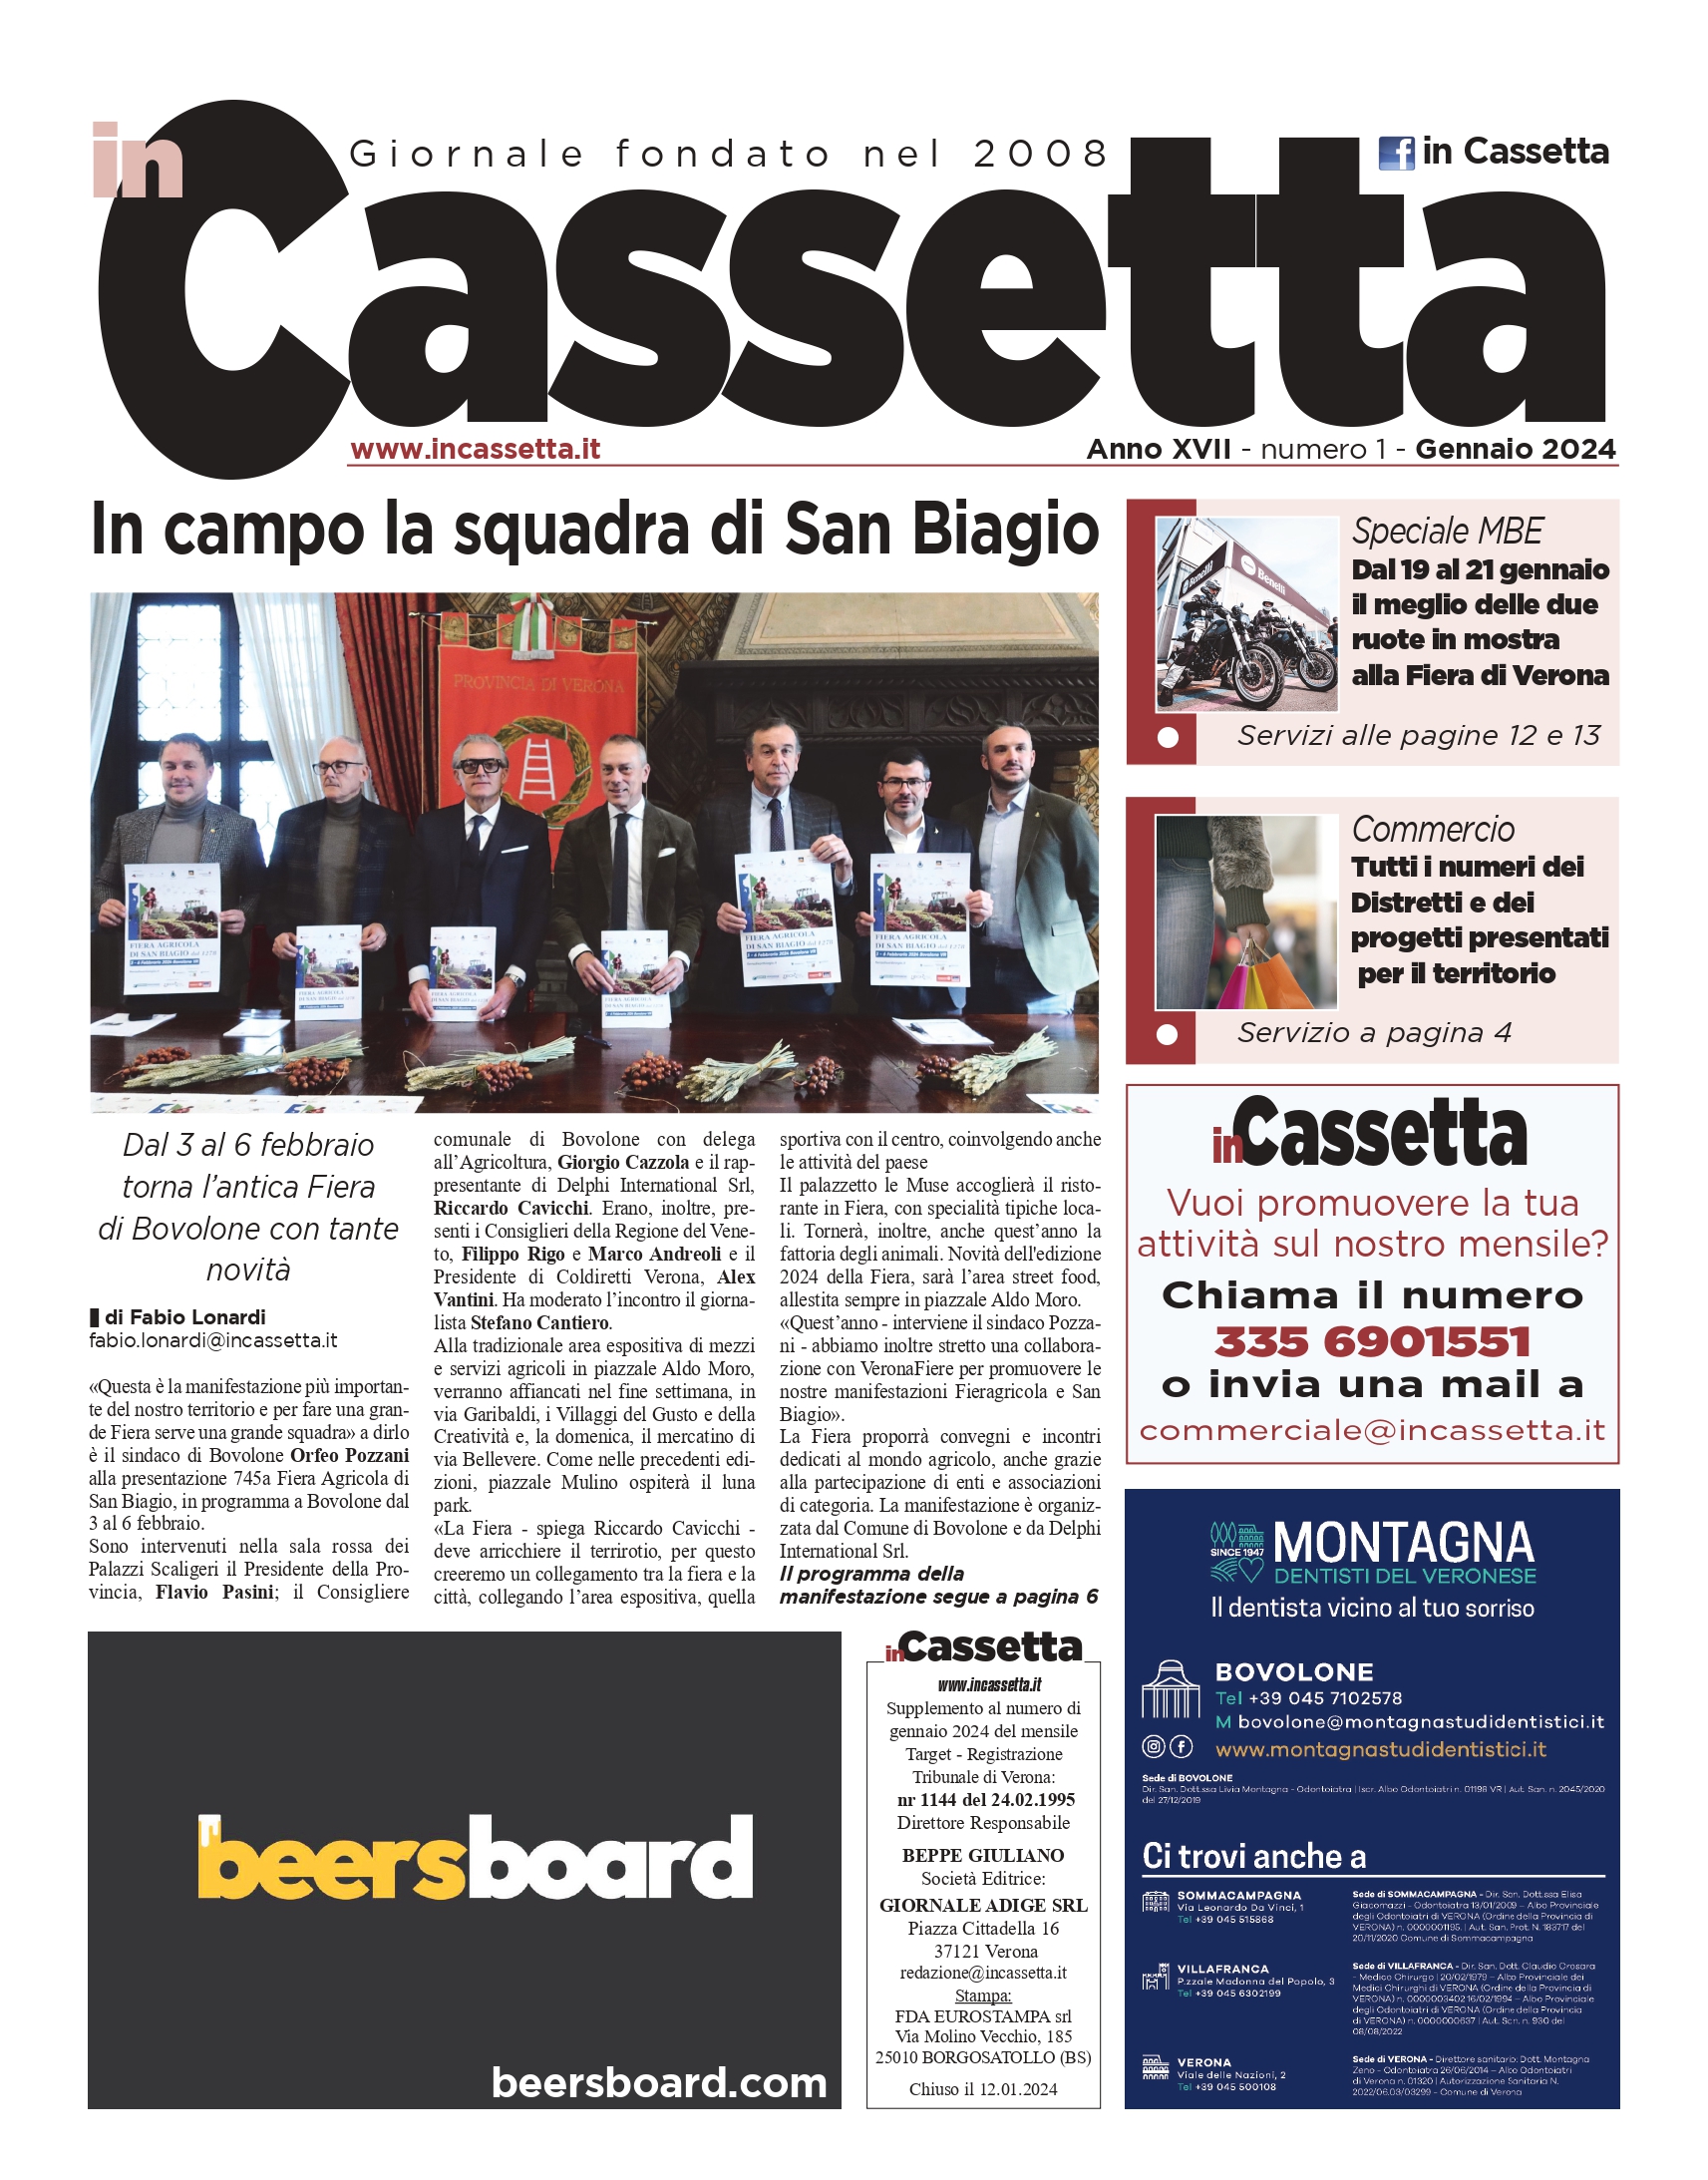 L’Adige, debutta la quarta edizione dei nostri free press: 100mila copie ogni mese nella nostra provincia